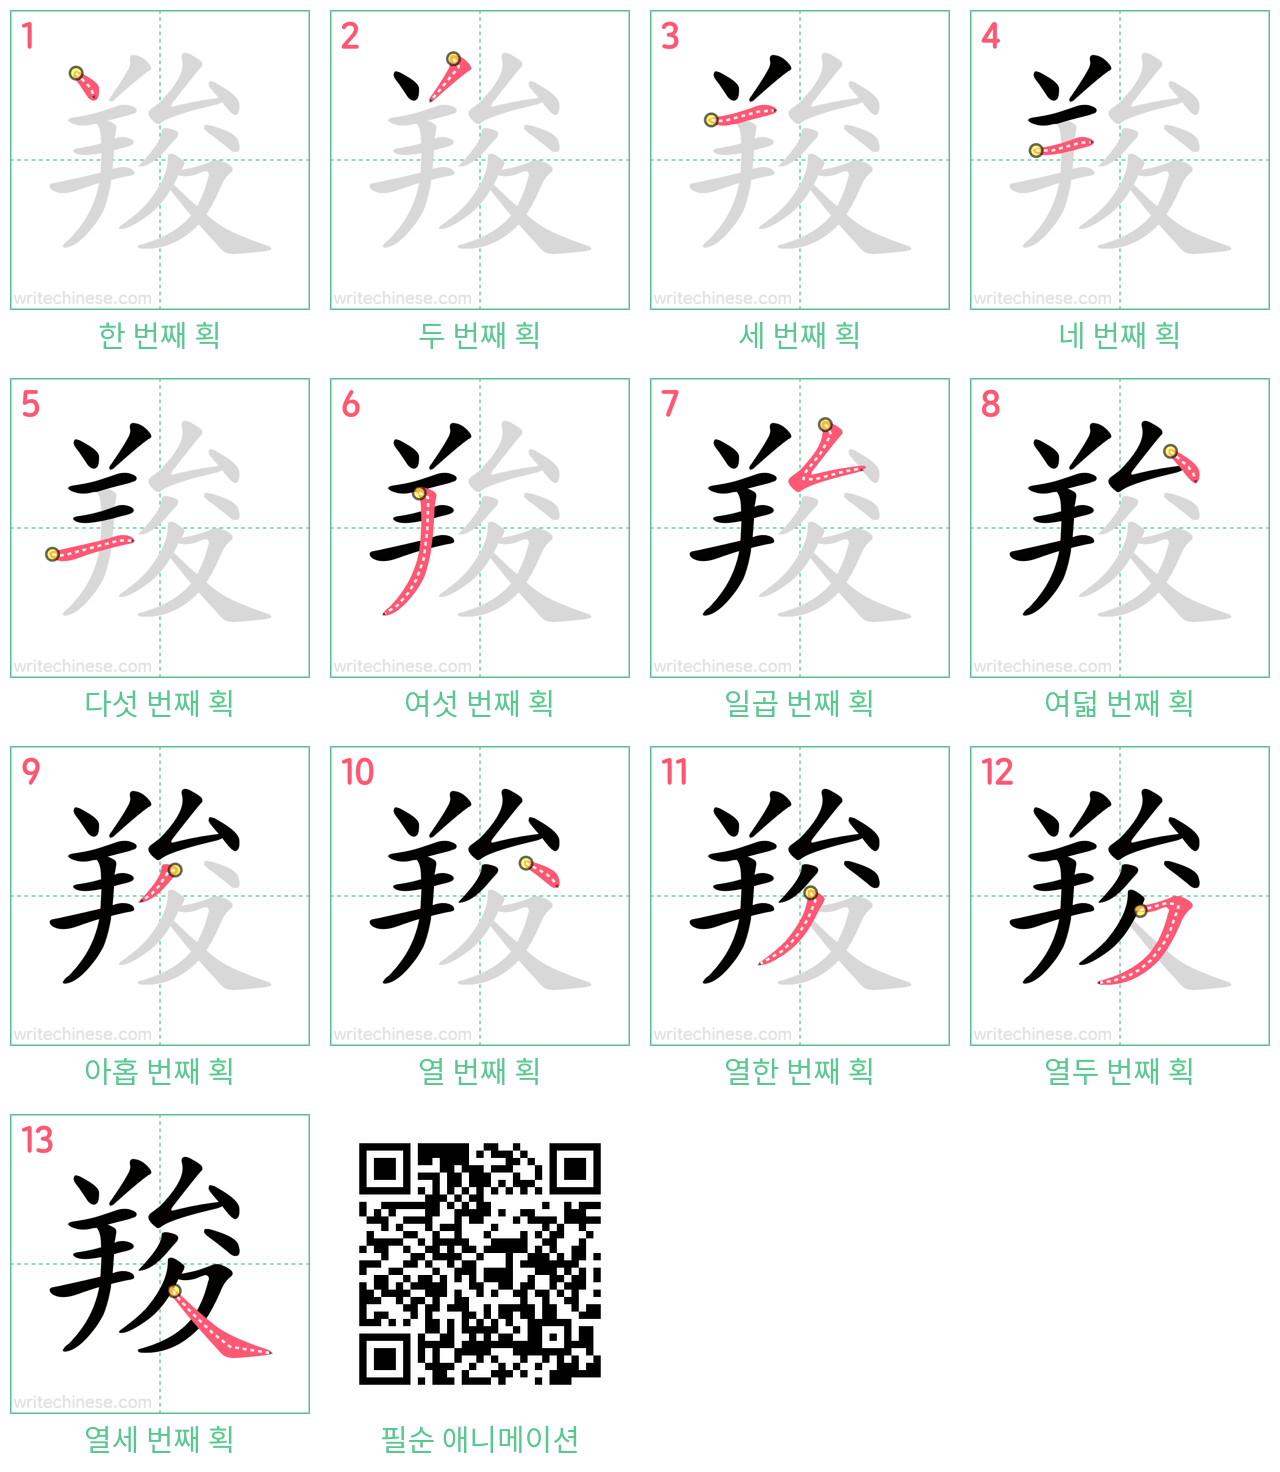 羧 step-by-step stroke order diagrams